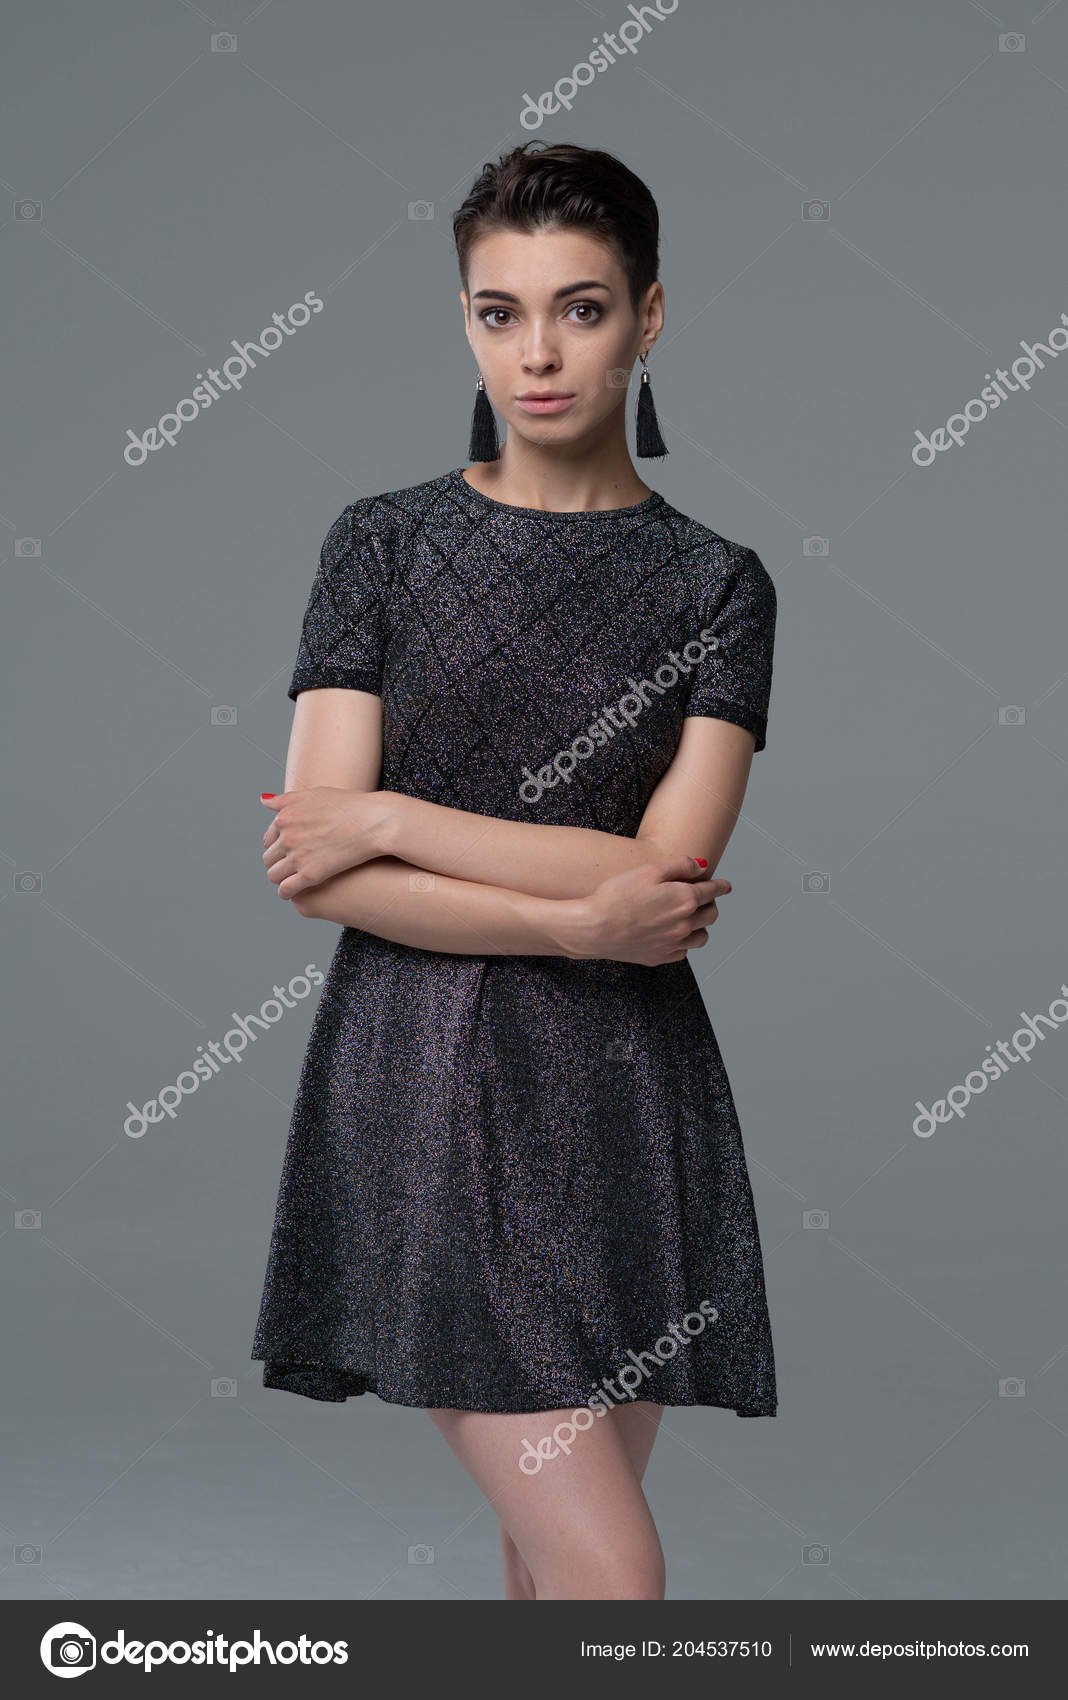 https://st4.depositphotos.com/10086424/20453/i/1600/depositphotos_204537510-stock-photo-young-beautiful-girl-posing-studio.jpg